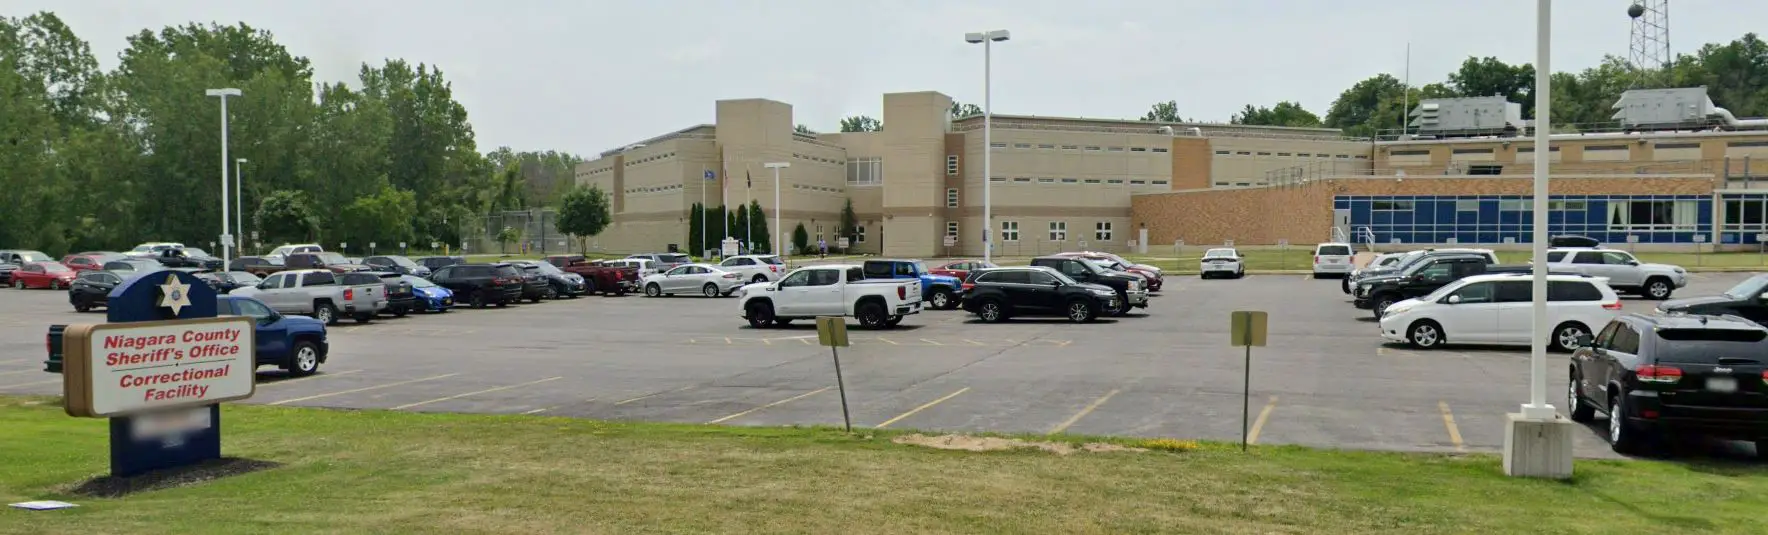 Photos Niagara County Correctional Facility 4